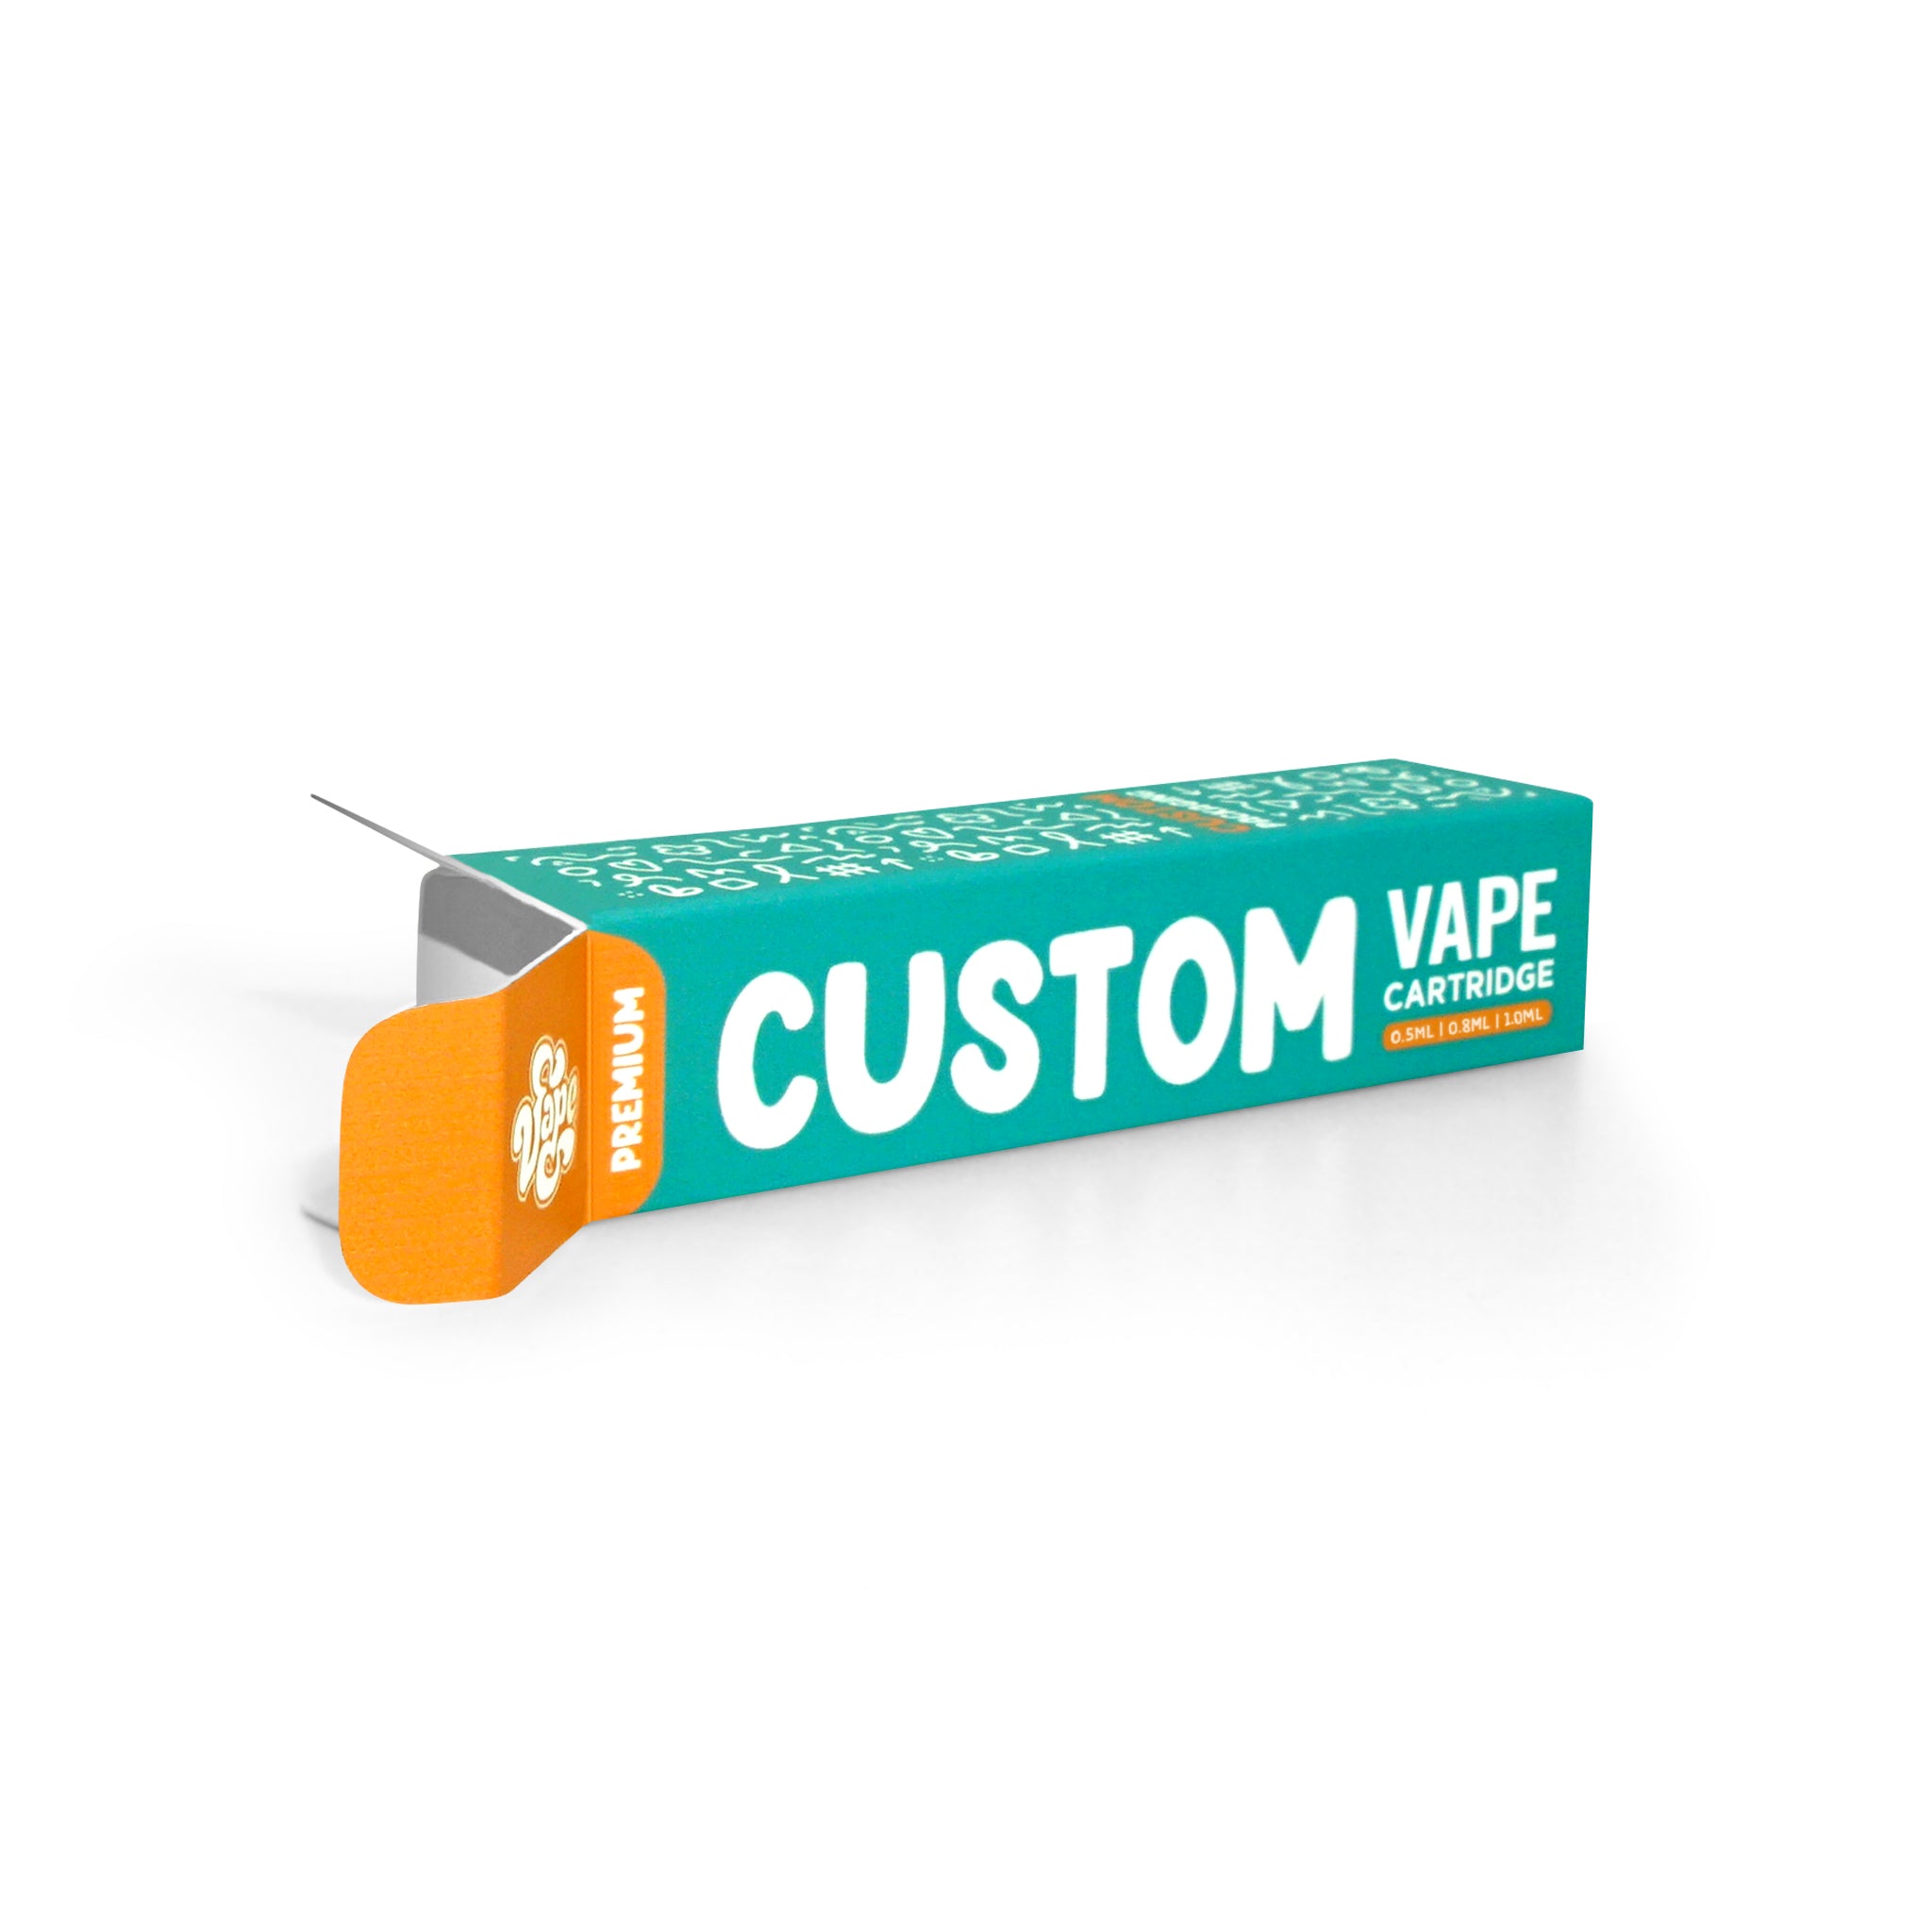 Custom Vape Cartridge Packaging Box